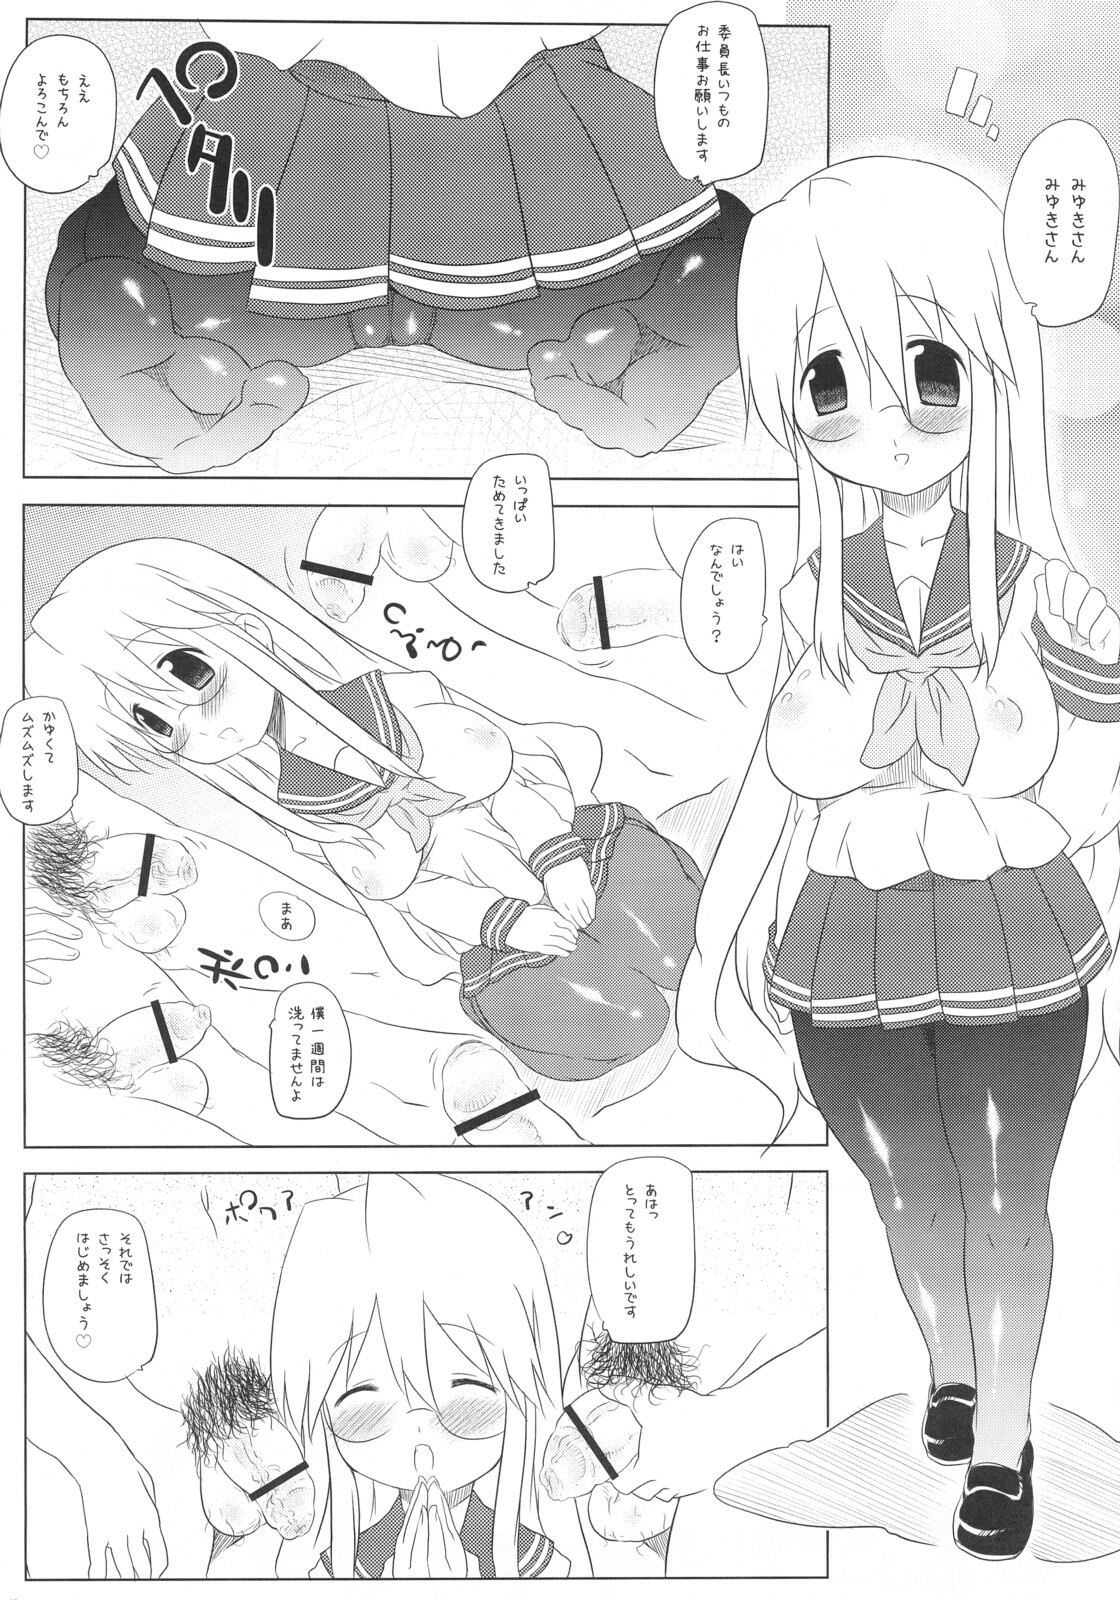 [Takatobiya] Motteke! Panty Stocking (Lucky Star) page 4 full